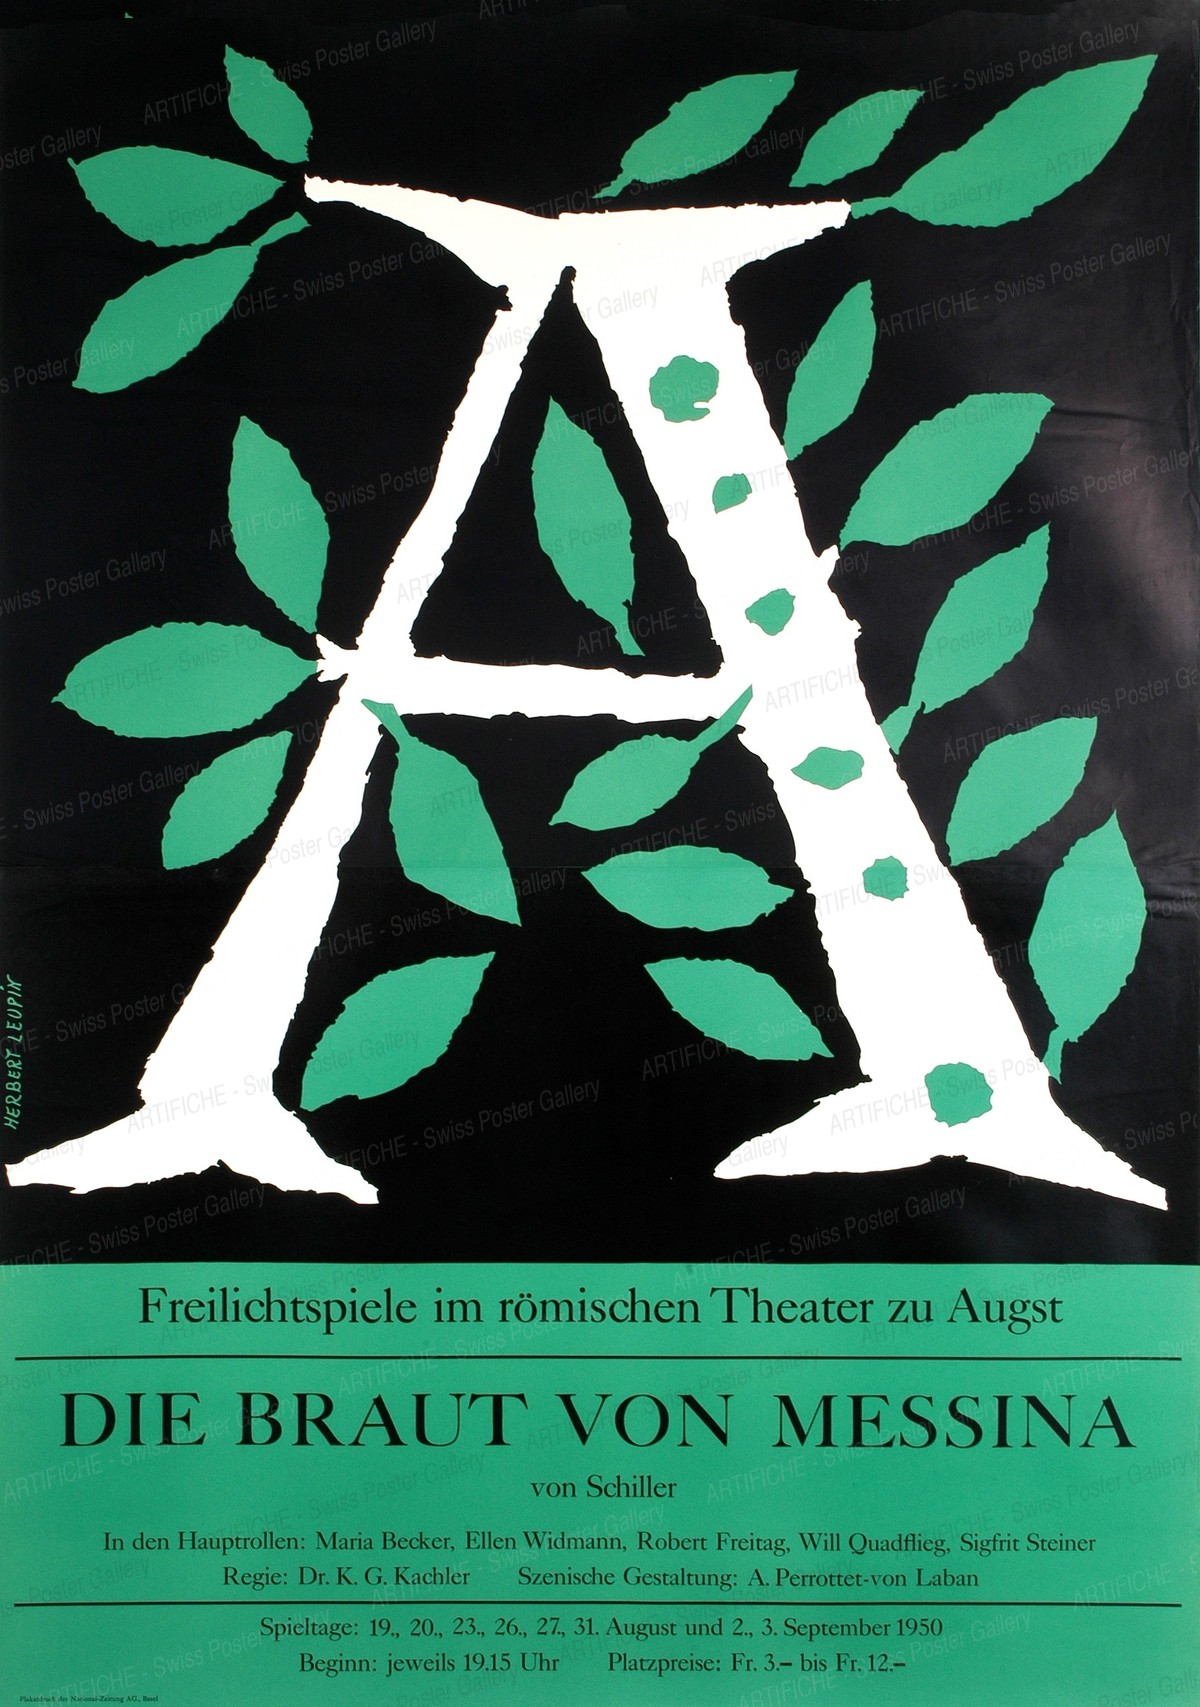 Die Braut von Messina – Maria Becker – Theater zu Augst von Friedrich Schiller, Herbert Leupin